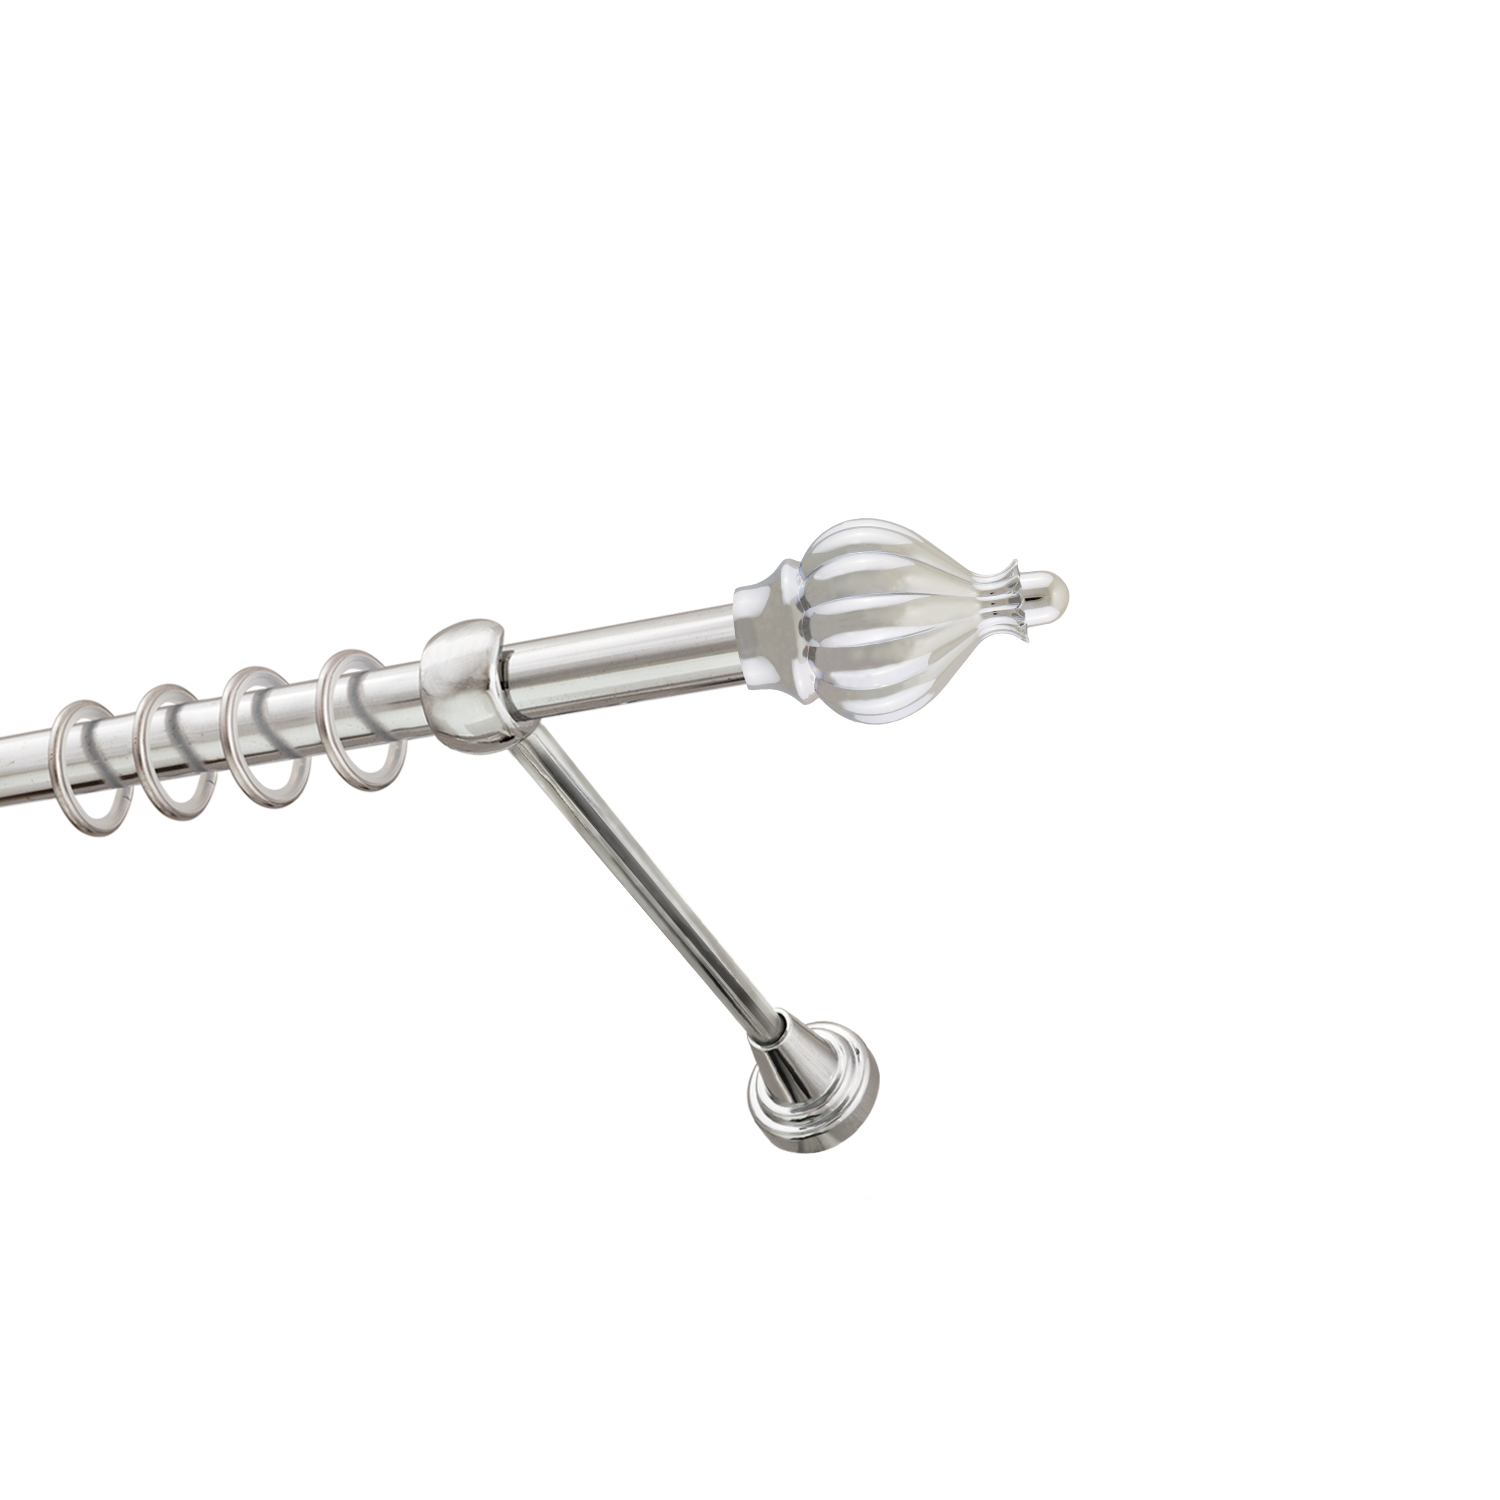 Металлический карниз для штор Афродита, однорядный 16 мм, серебро, гладкая штанга, длина 240 см - фото Wikidecor.ru